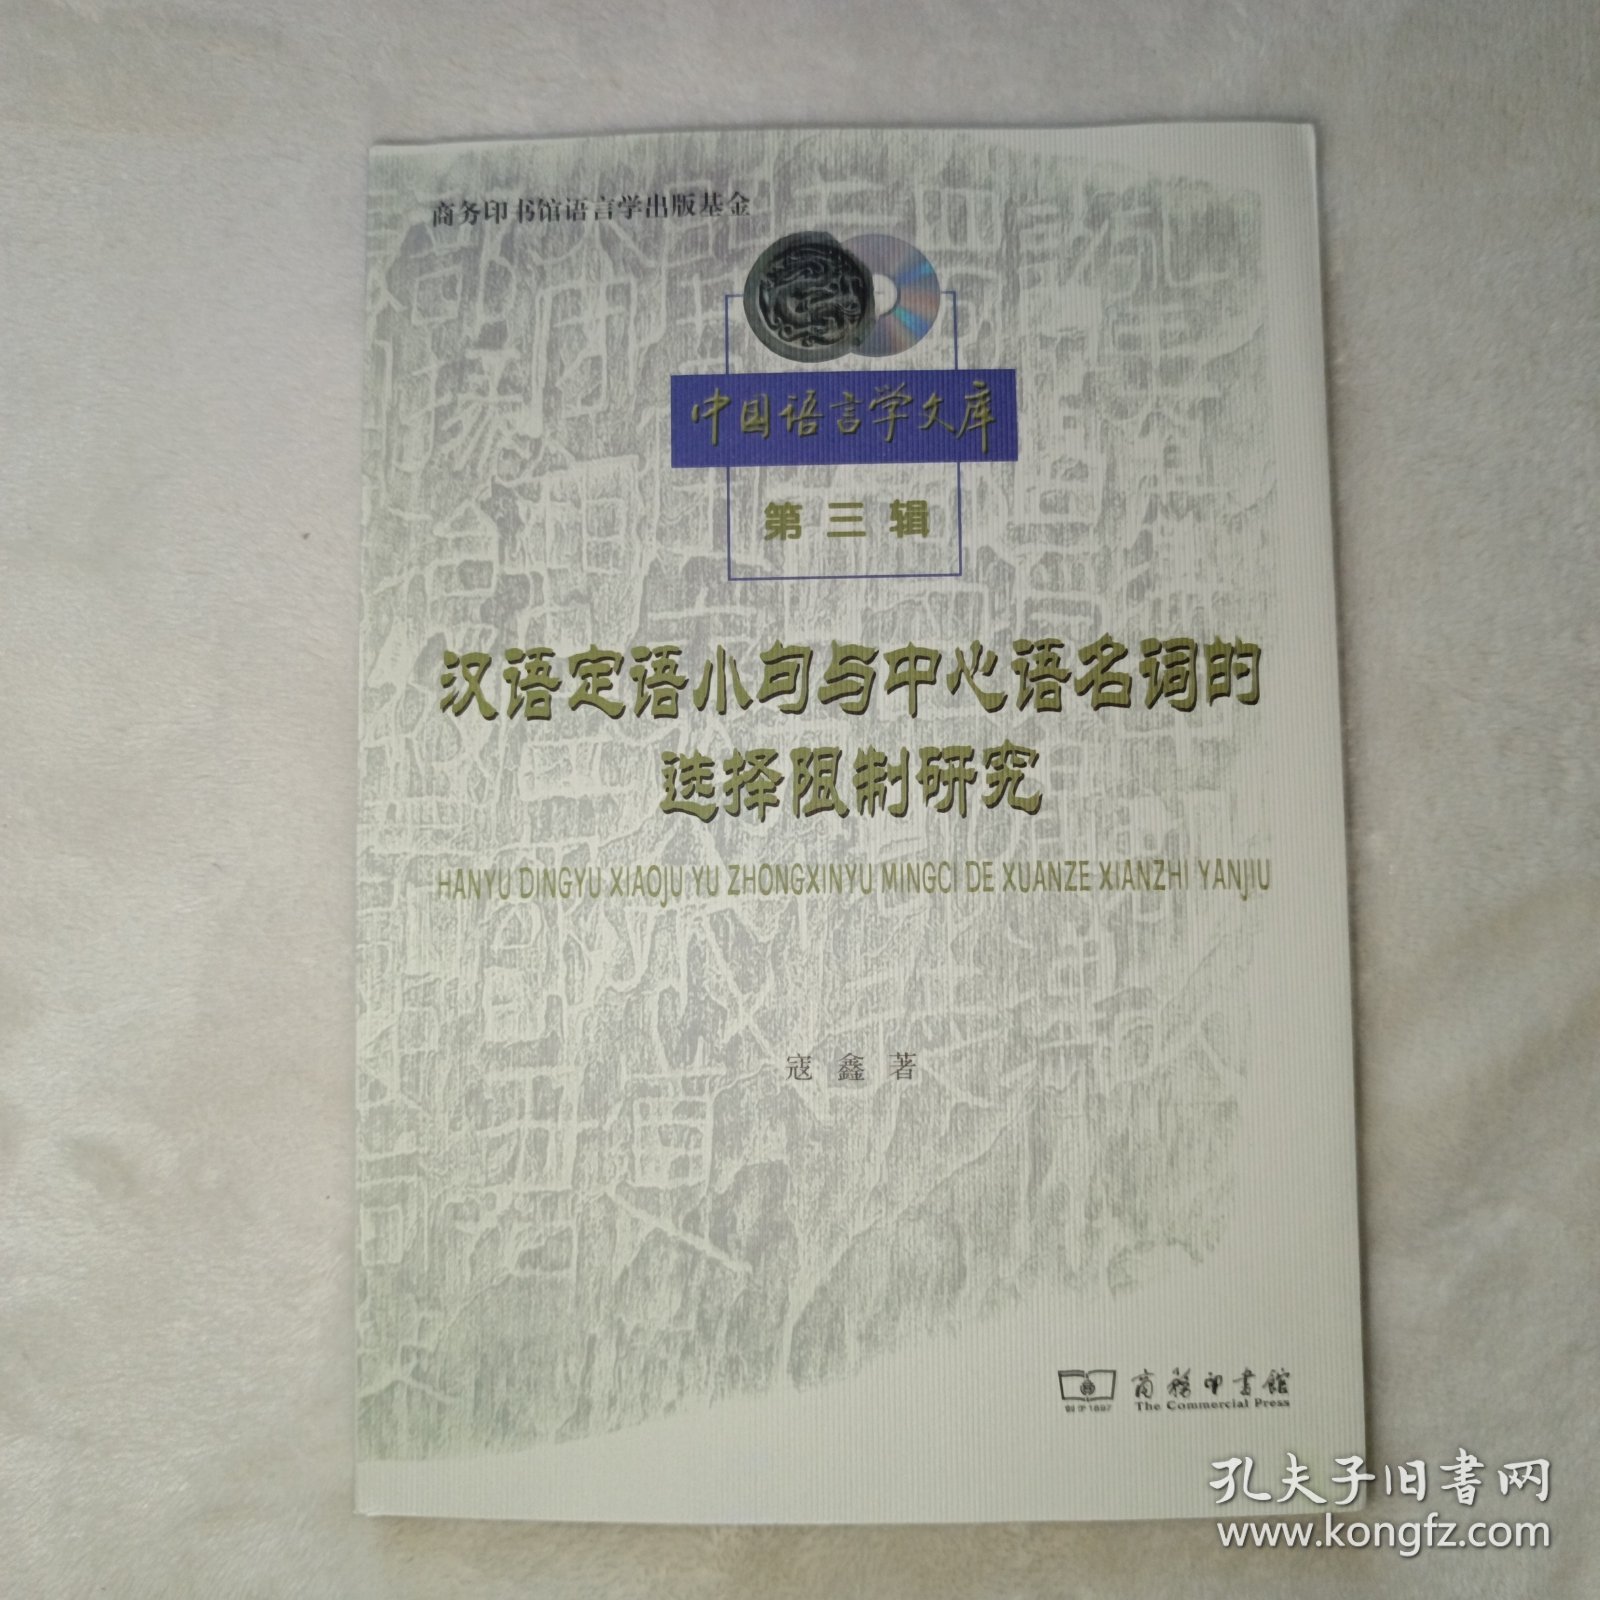 汉语定语小句与中心语名词的选择限制研究。新书未使用。